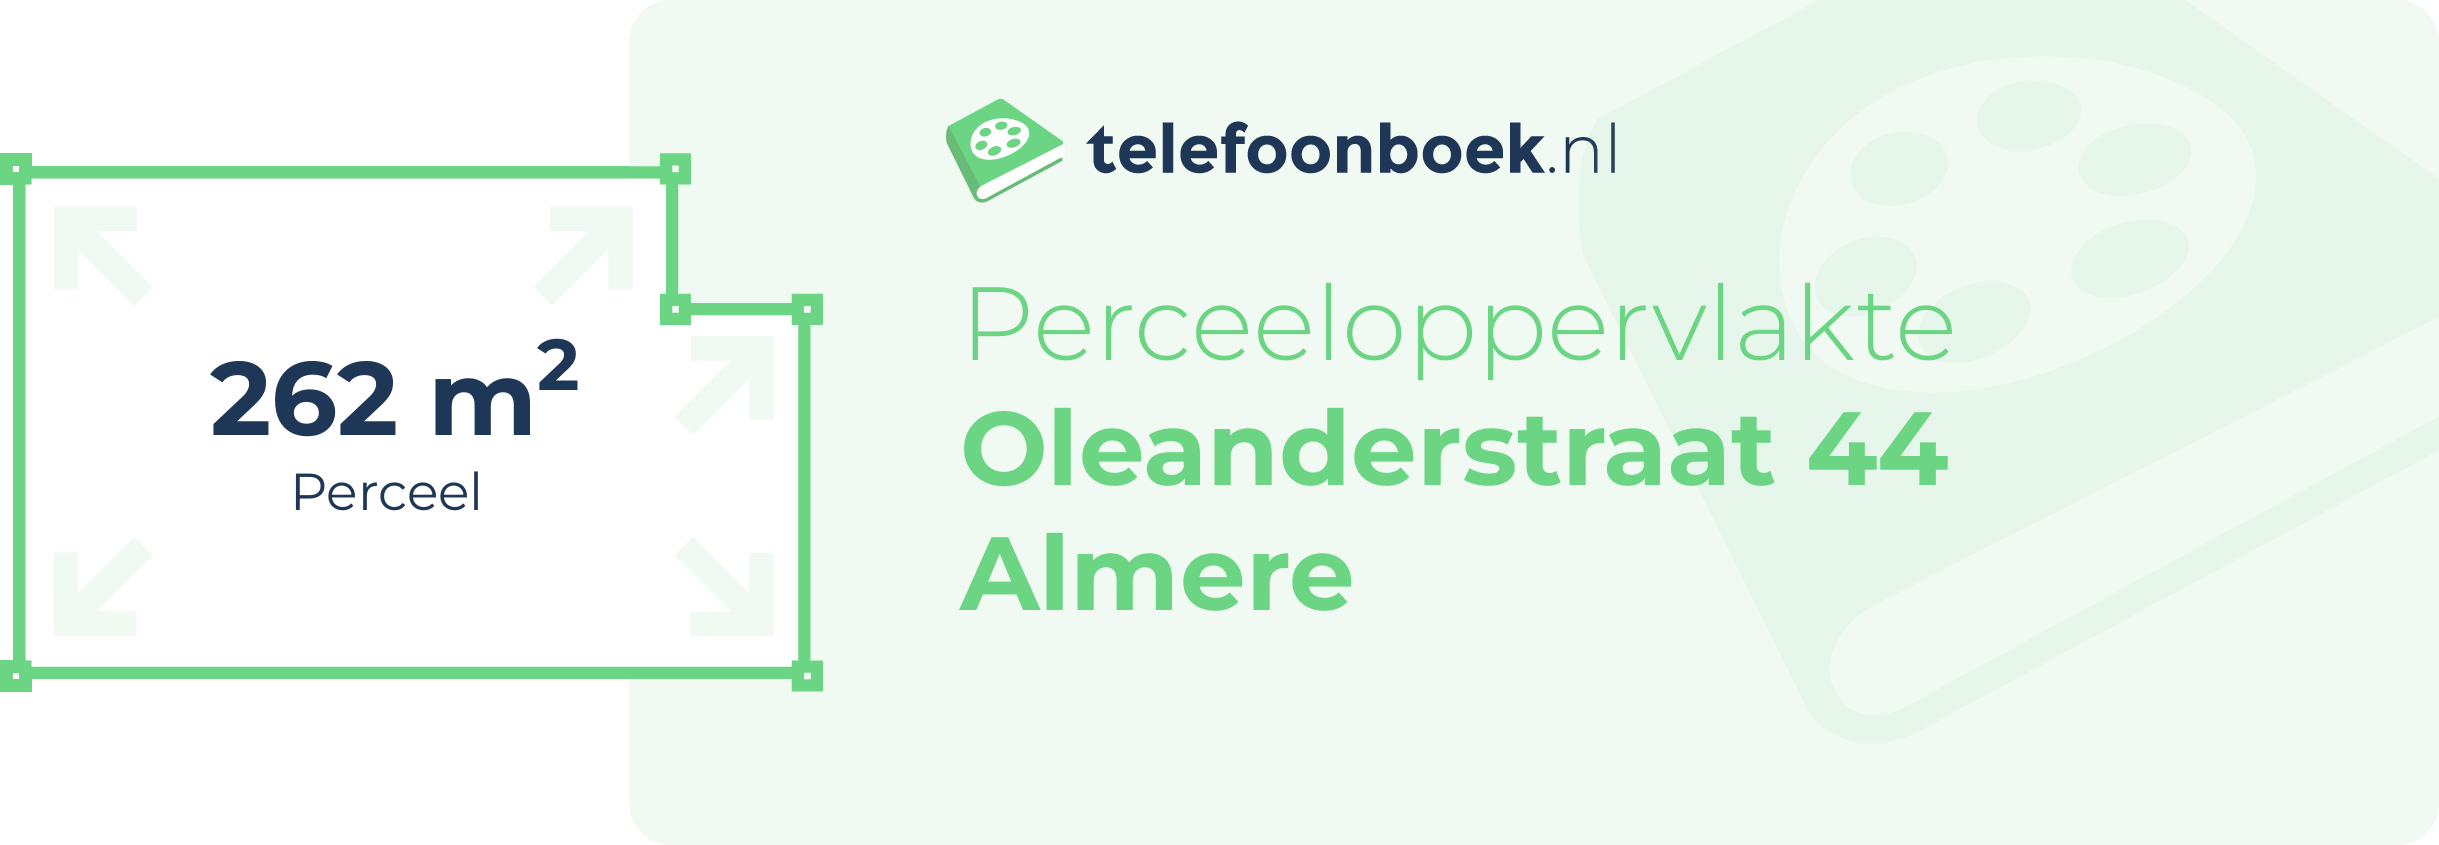 Perceeloppervlakte Oleanderstraat 44 Almere